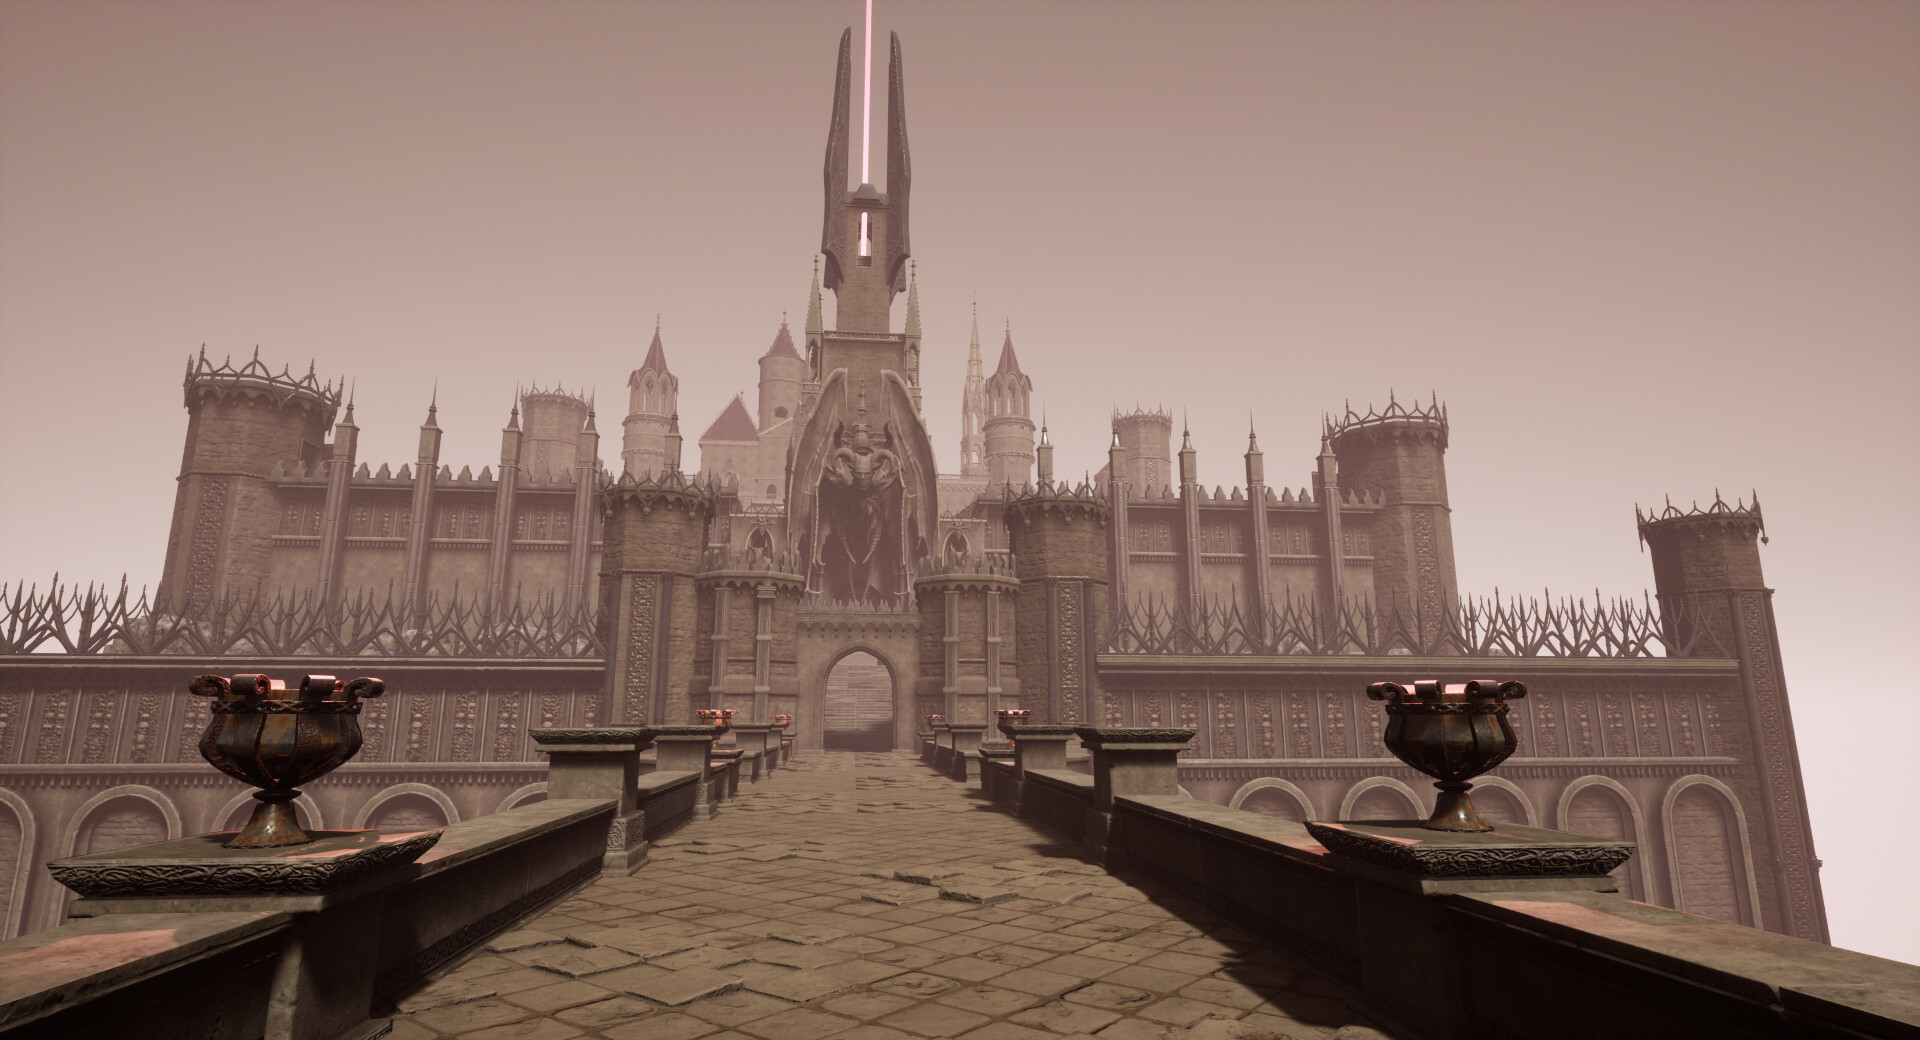 ArtStation - Dark Fantasy Concept Medieval Castle, Ramparts and Props